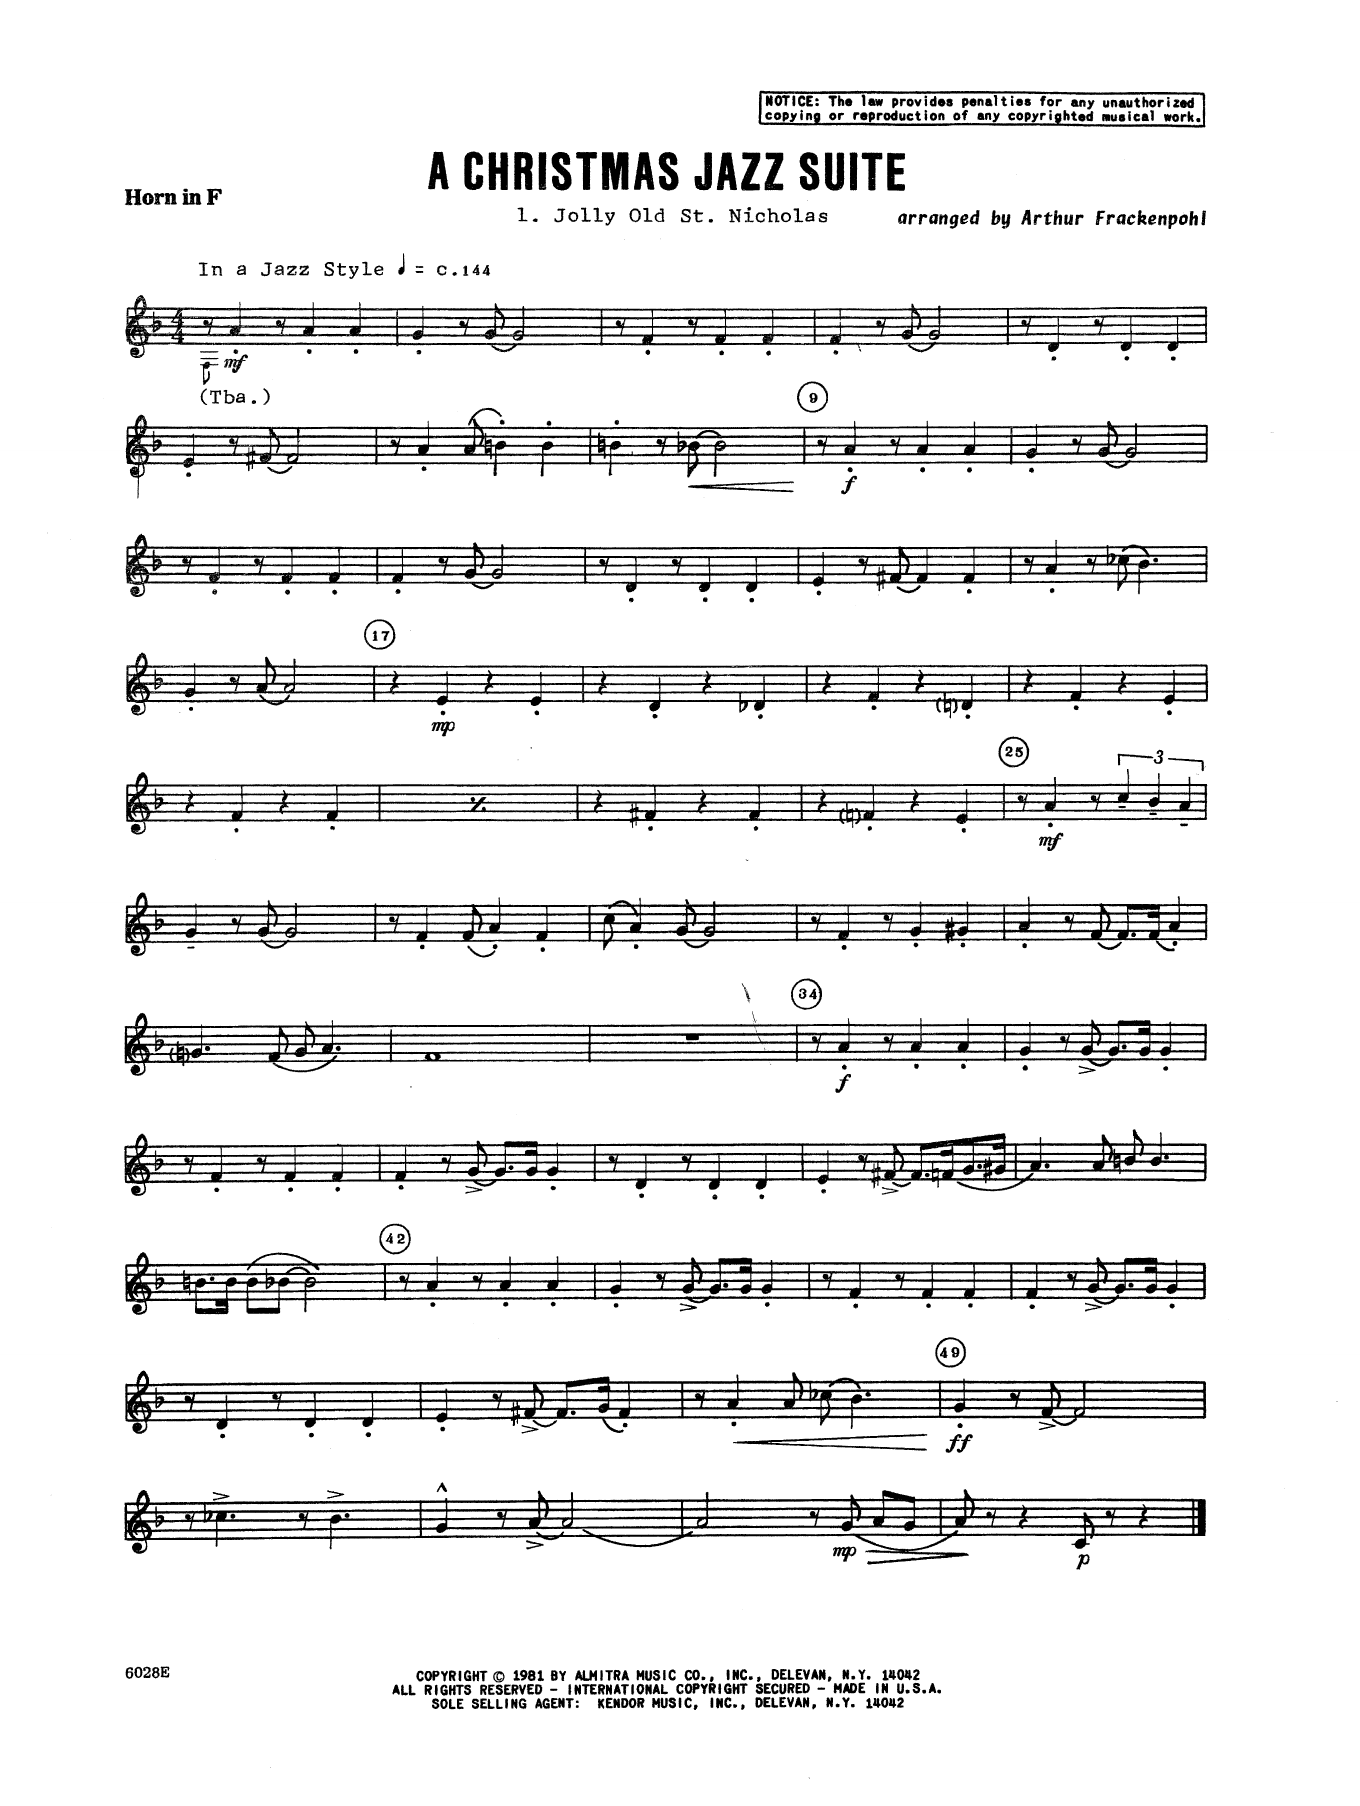 Download Arthur Frackenpohl Christmas Jazz Suite - Horn in F Sheet Music